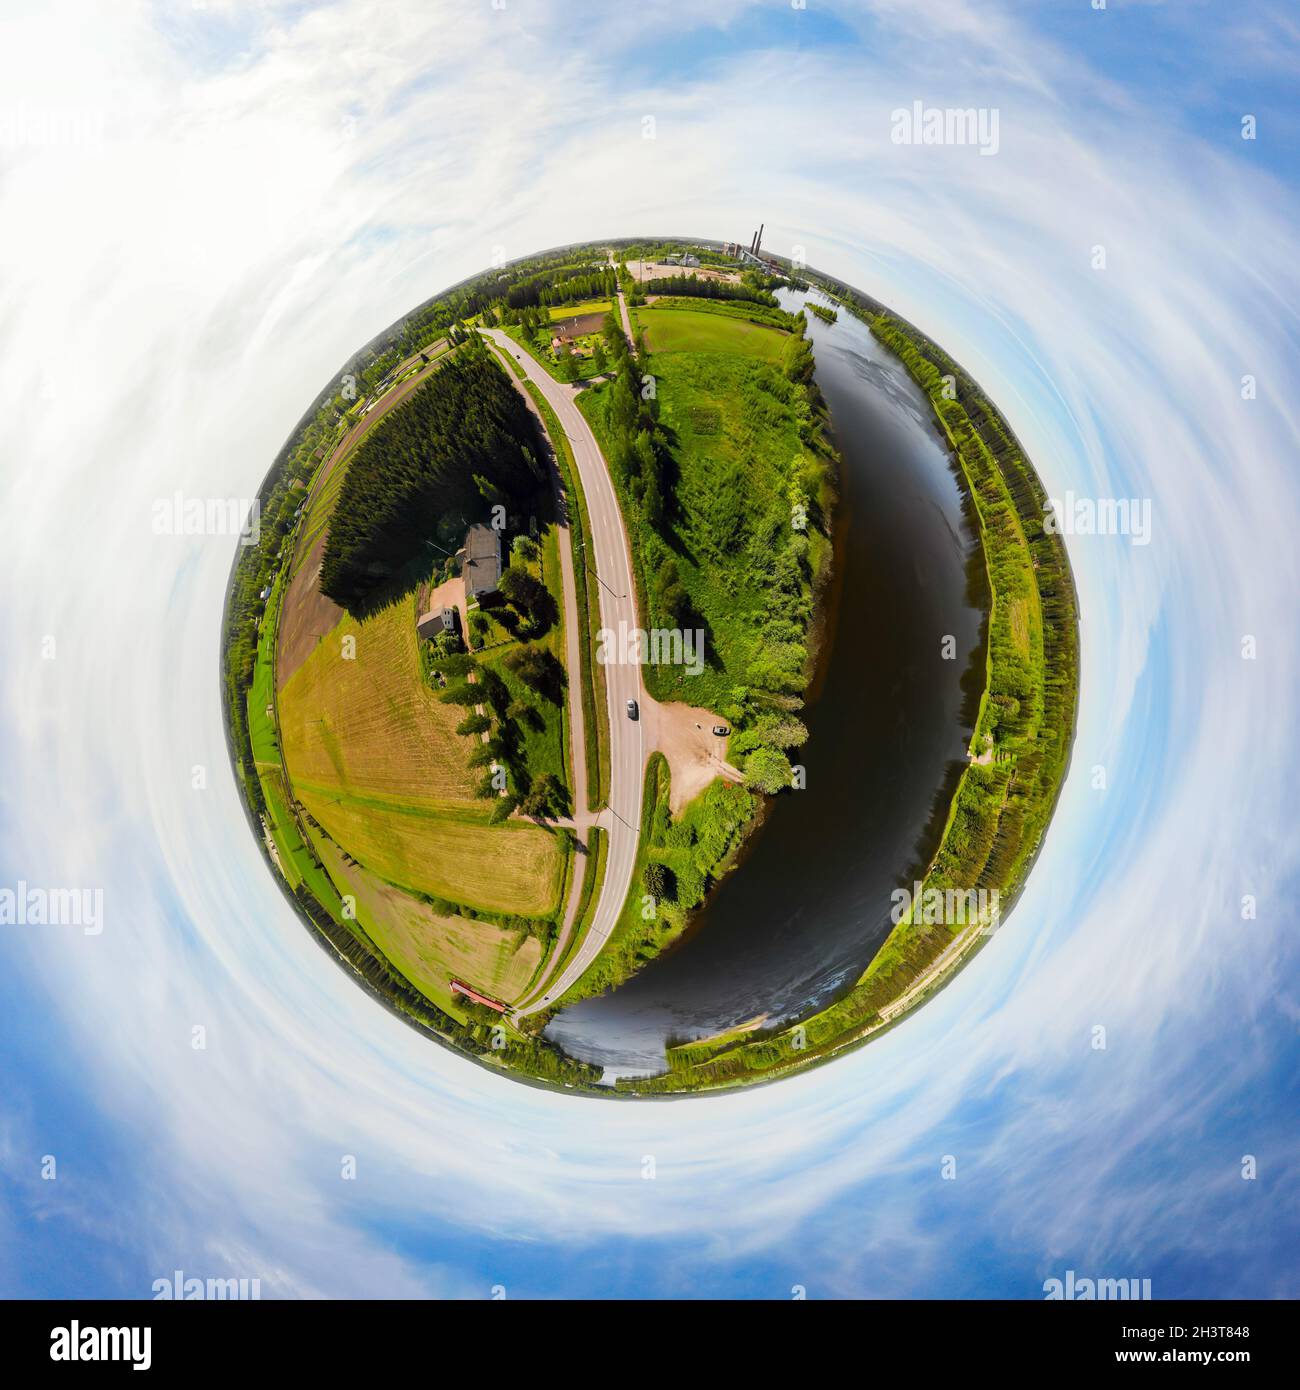 Vue panoramique aérienne en trois dimensions de la place Myllykoski sur la rivière Kymijoki, Kouvola, Finlande. Banque D'Images